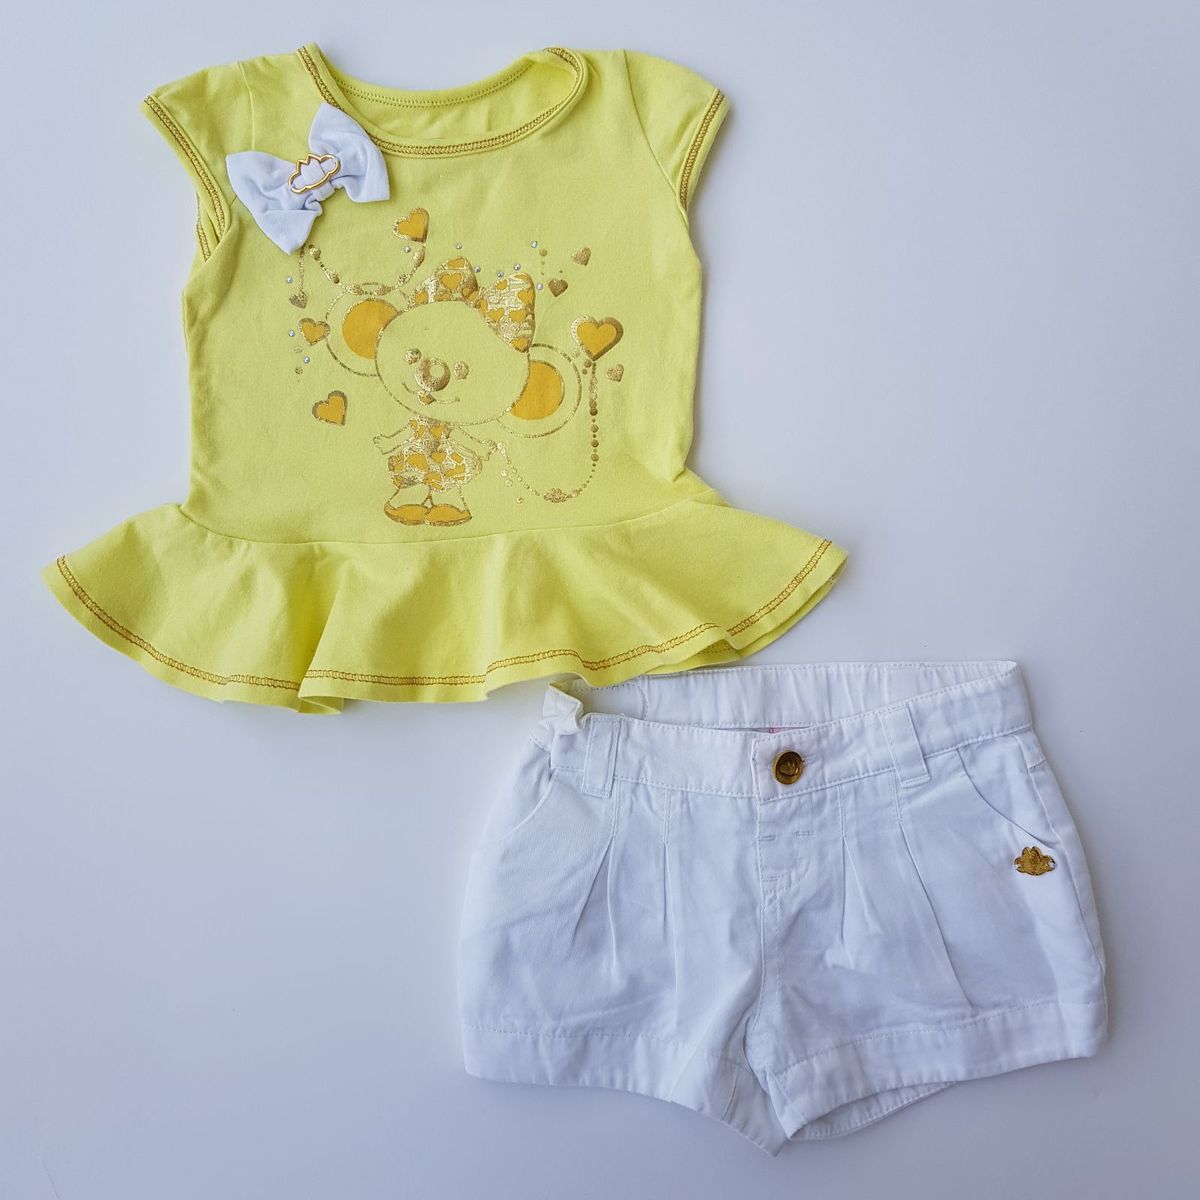 roupas lilica ripilica para bebe